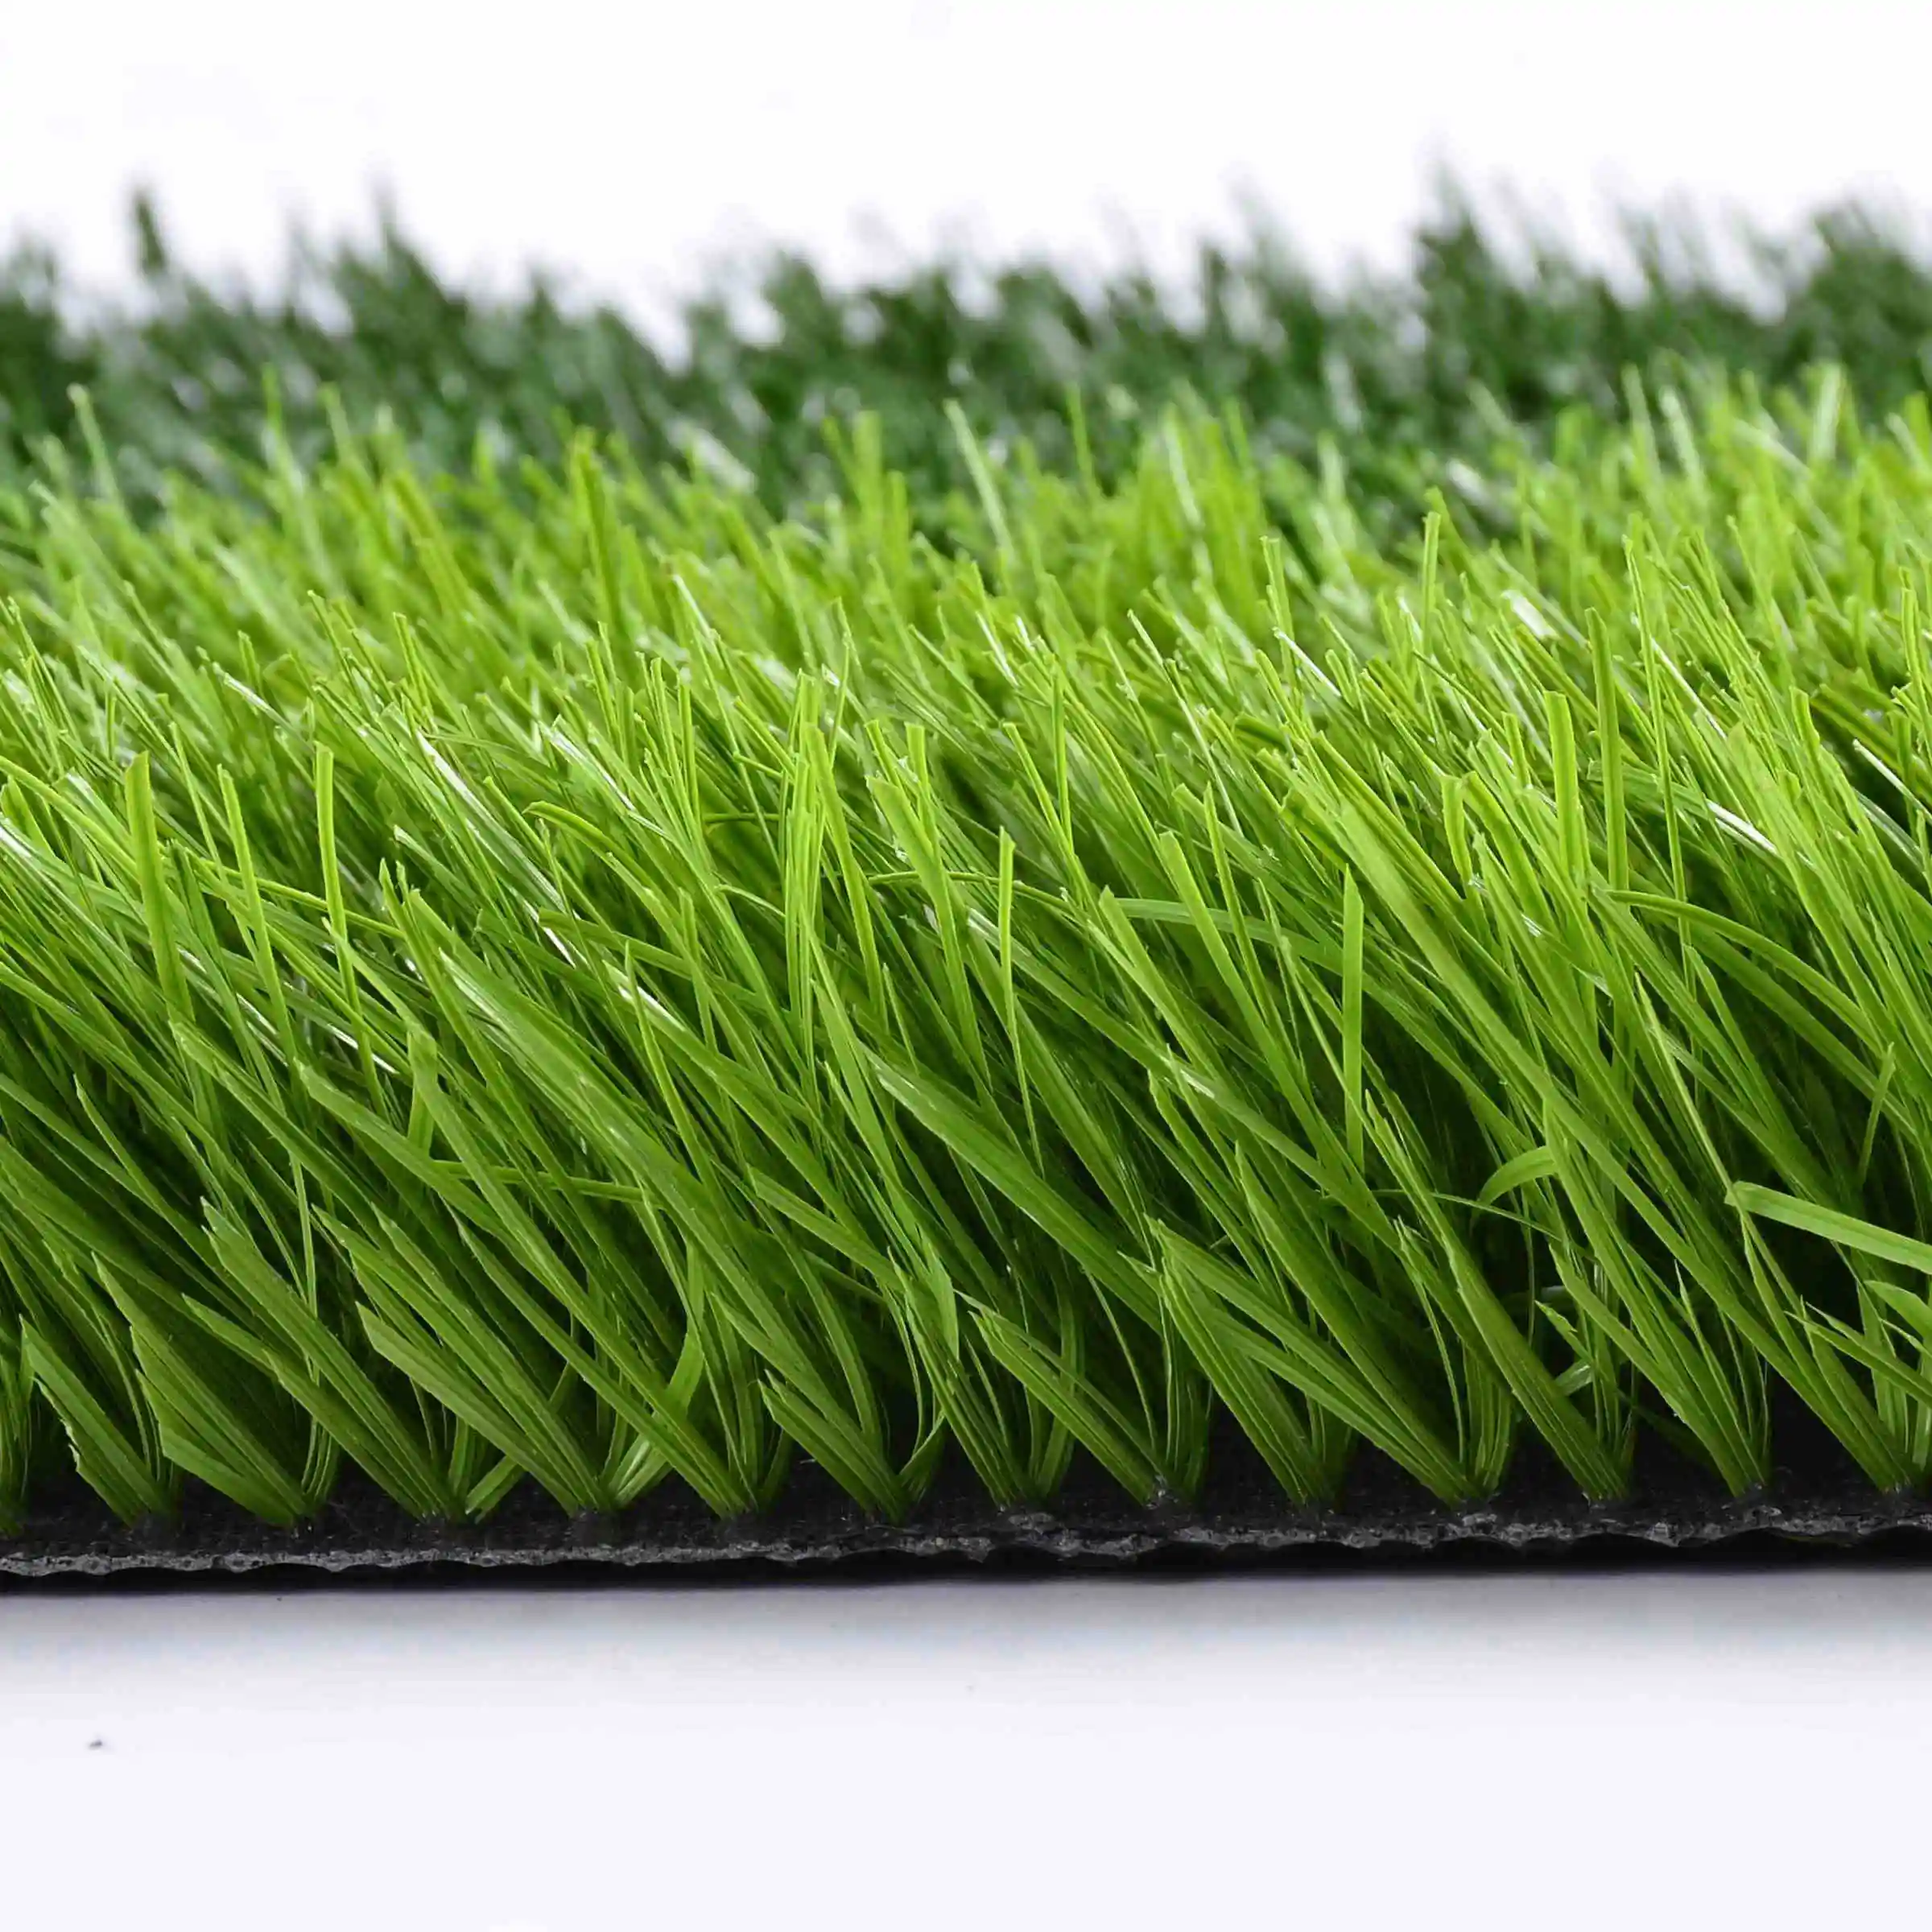 พื้นกีฬาหญ้าภูมิทัศน์ฟุตบอลผู้ผลิตจีนหญ้าเทียมสนามหญ้าสังเคราะห์